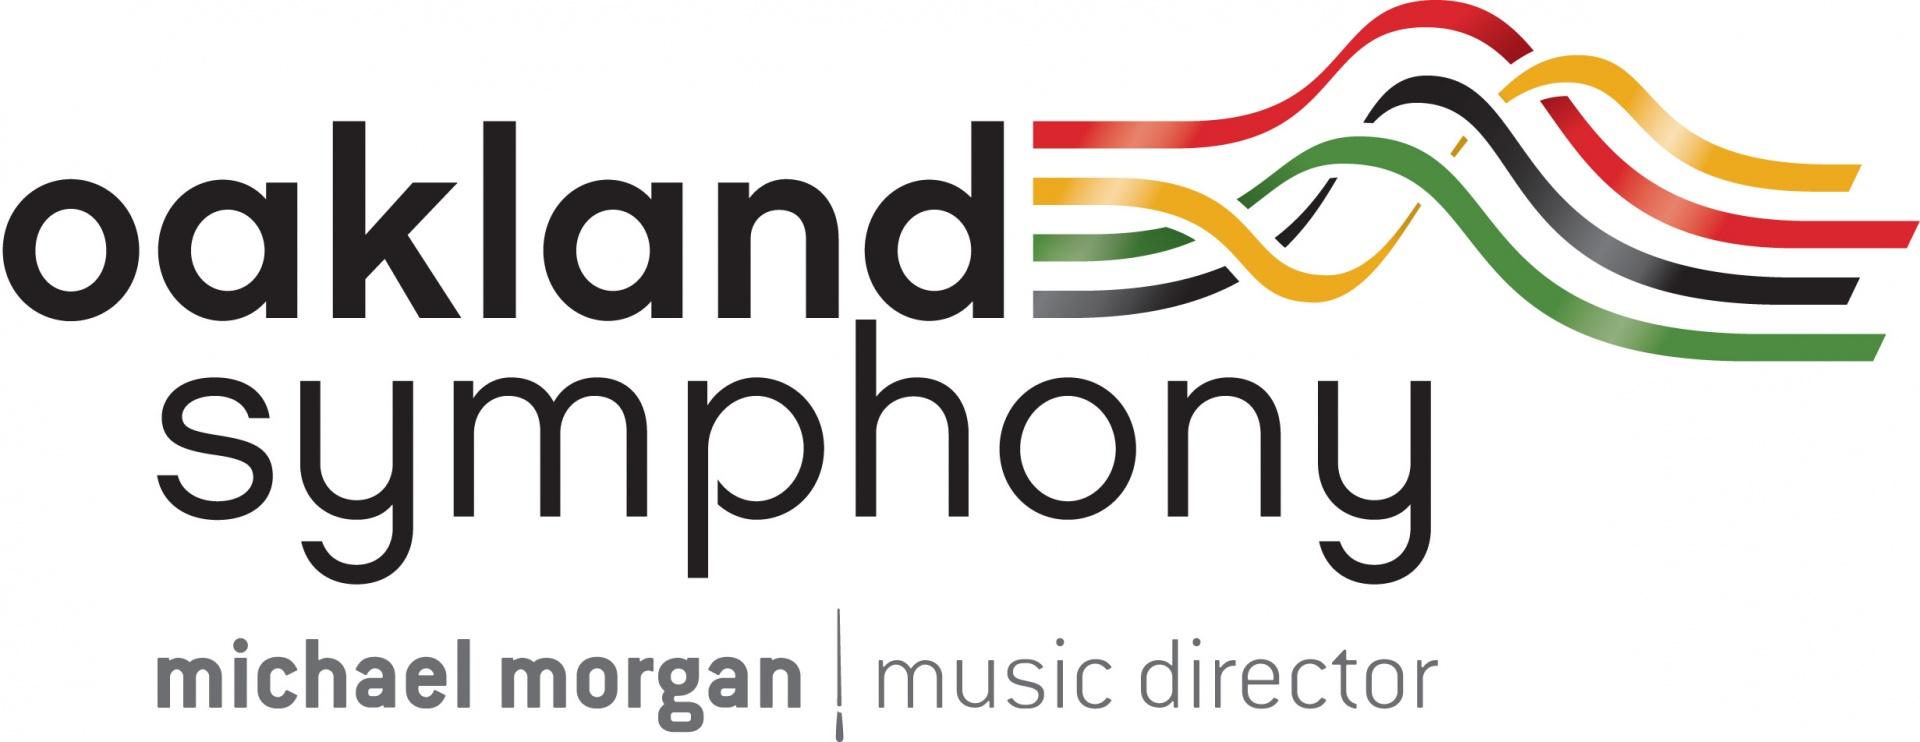 Symphony Logo - Oakland Symphony Logos - Oakland Symphony